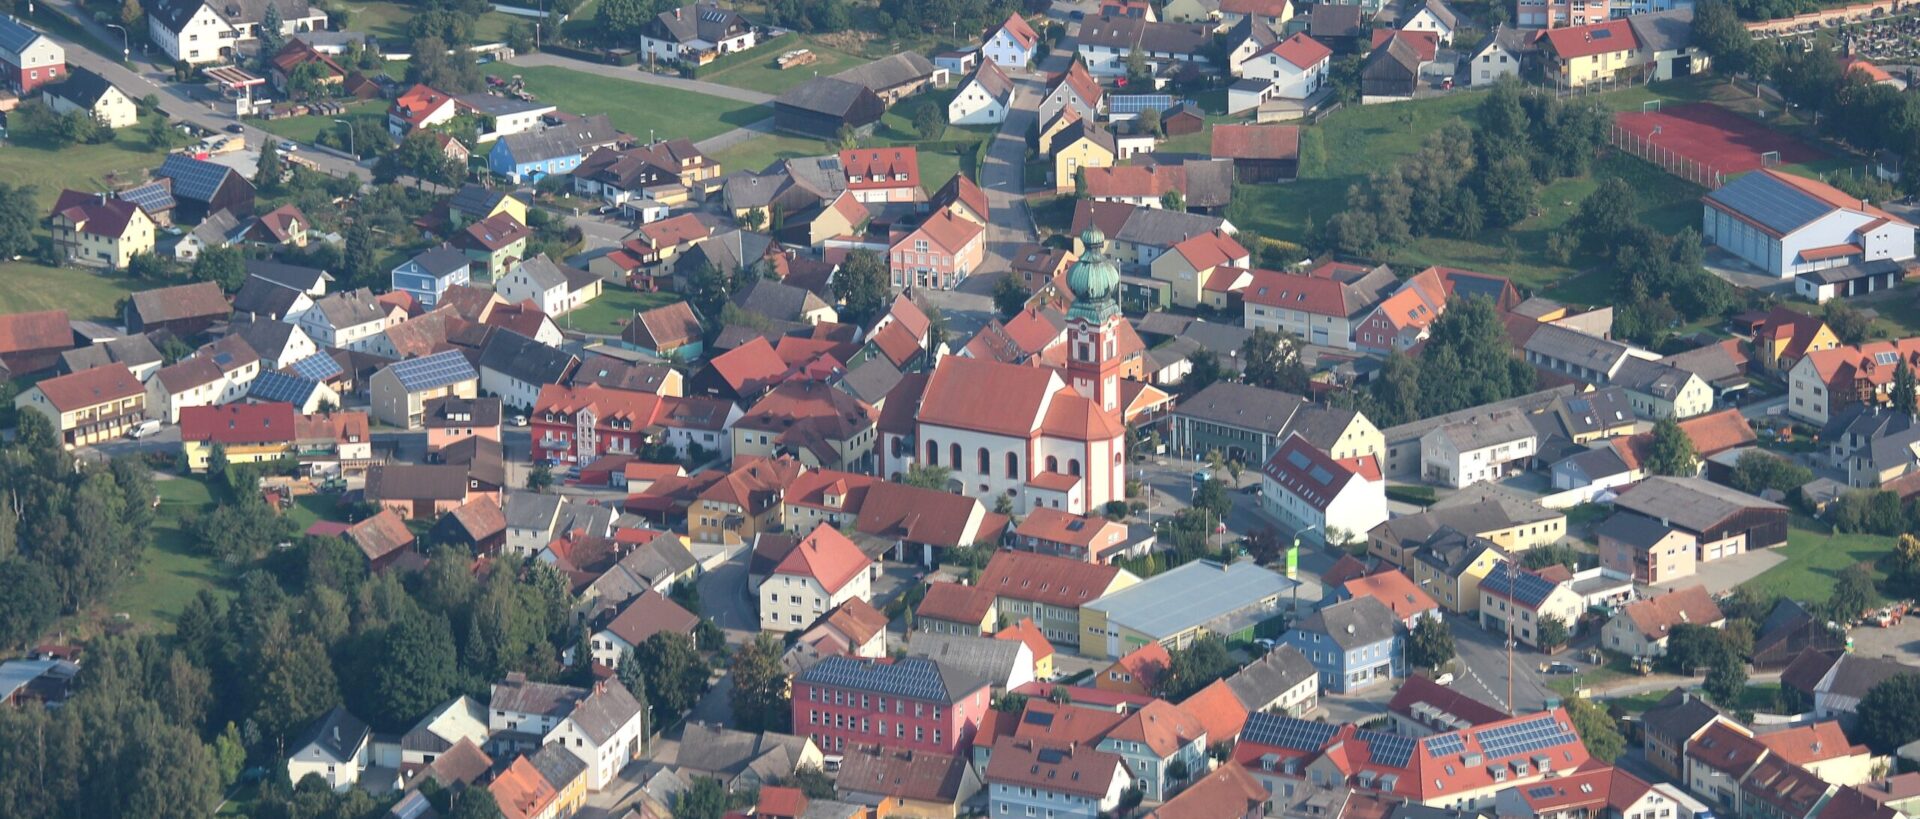 Le village d'Eslarn, en Allemagne, à proximité de la frontière tchèque | © Aloïs Köppl/Wikimedia Commons/CC BY-SA 3.0